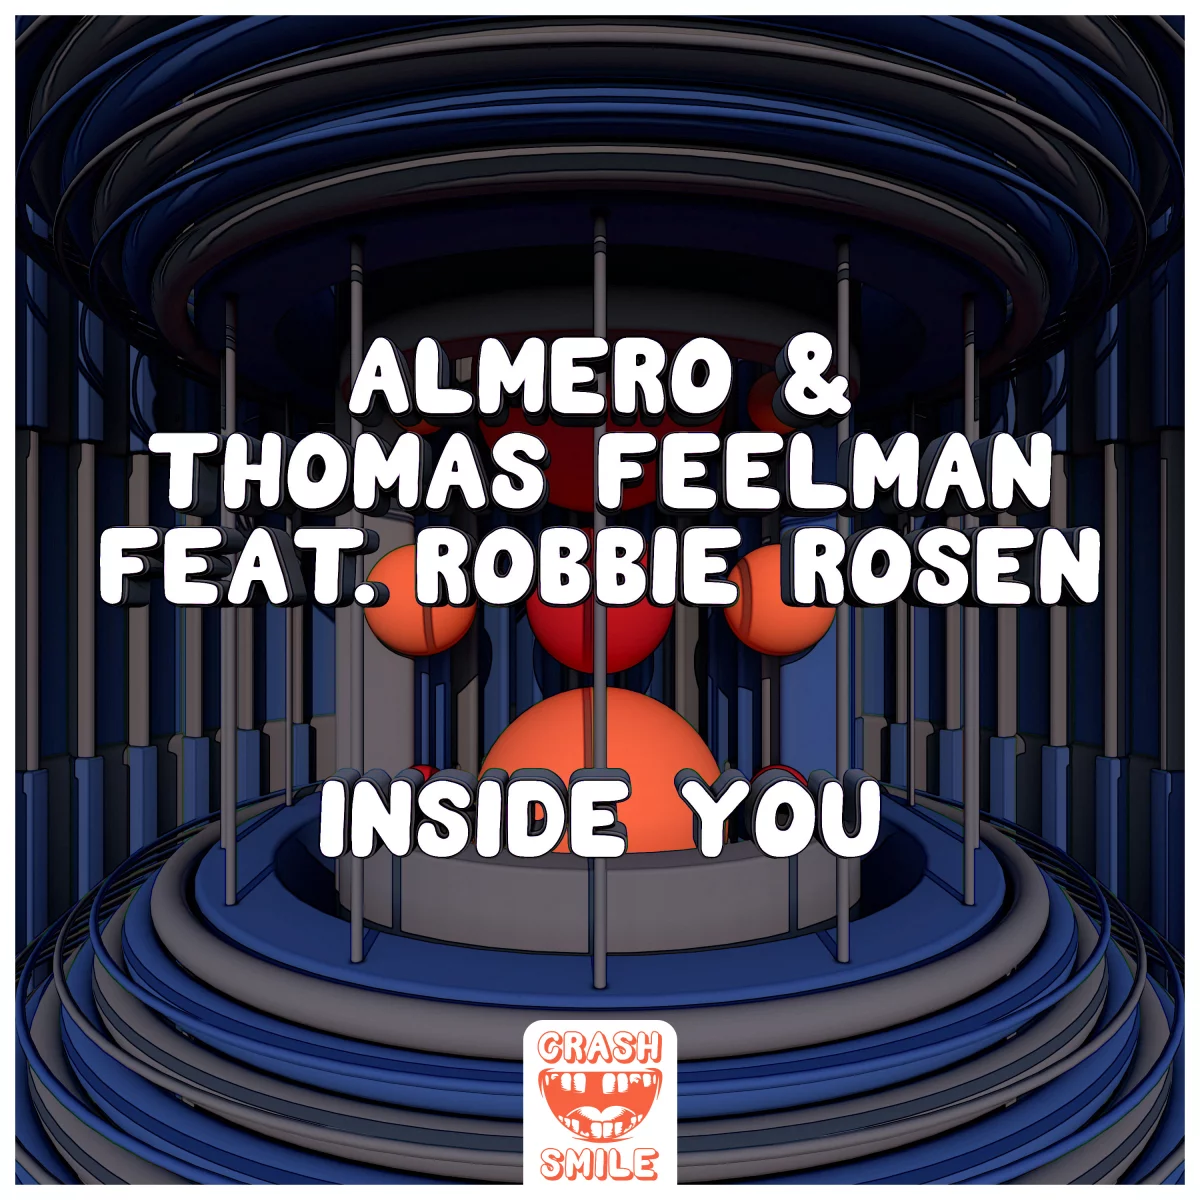 Inside You - Almero⁠ & Thomas Feelman⁠ feat. Robbie Rosen⁠ 